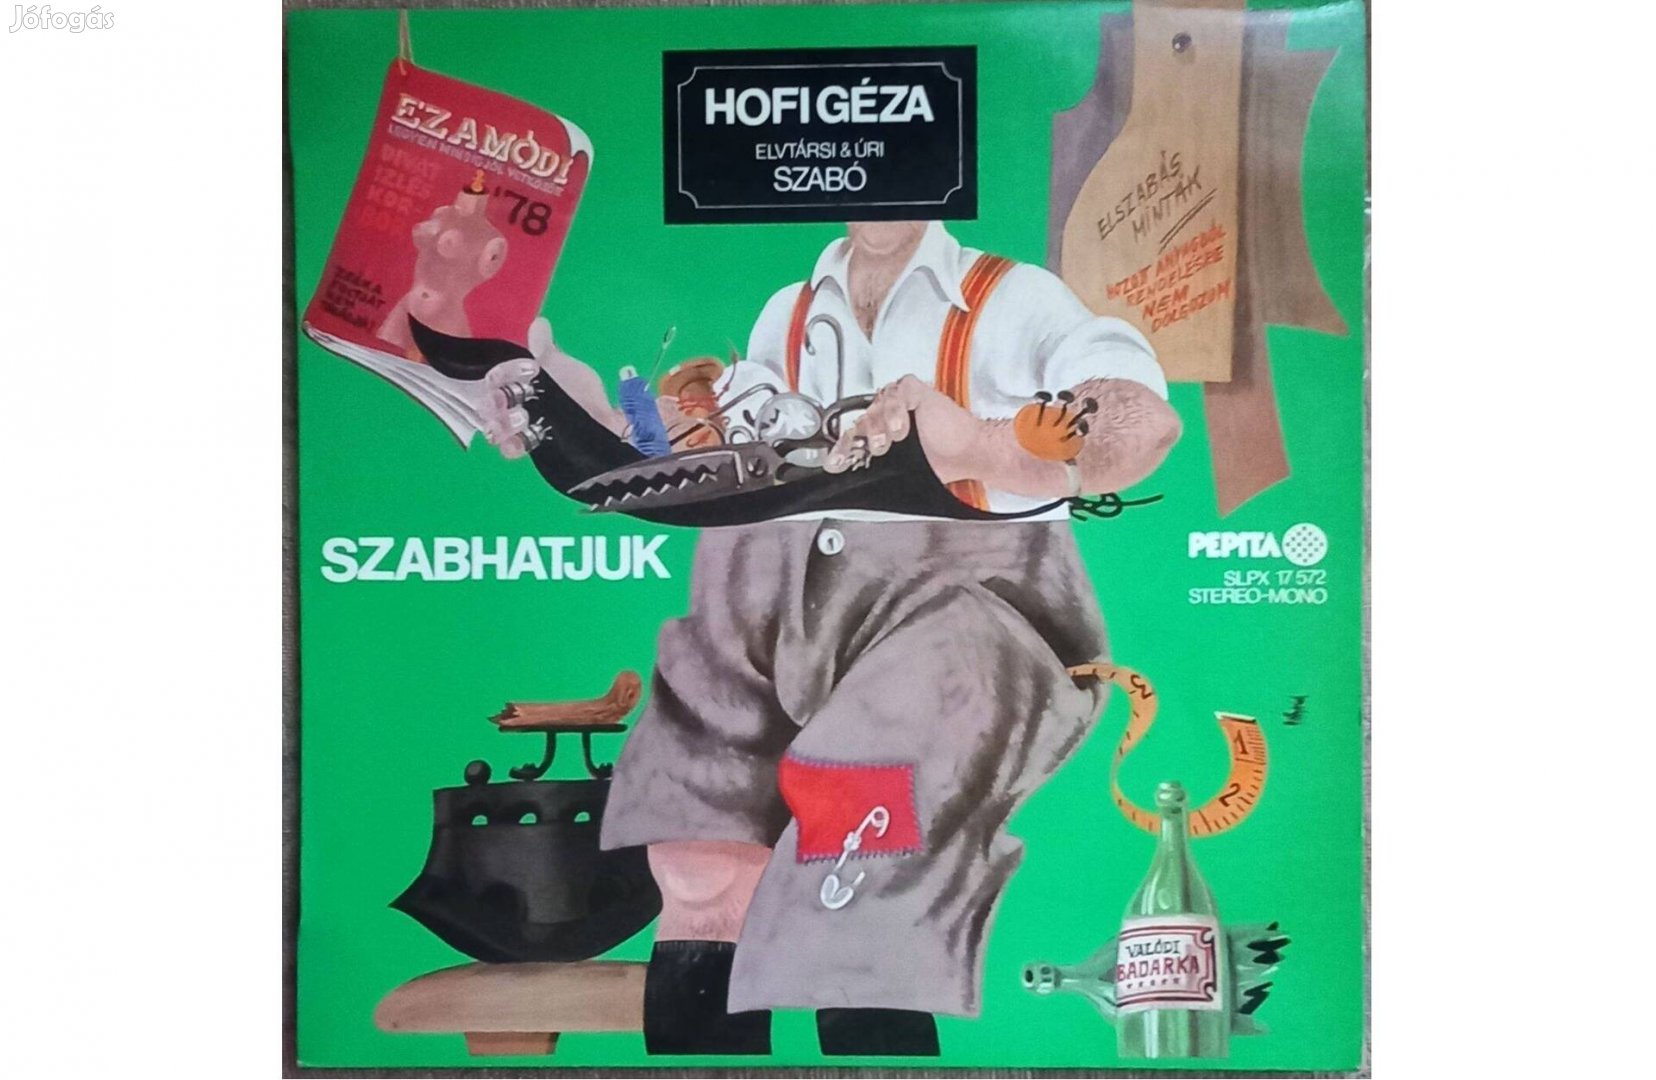 Hofi Géza - Szabhatjuk, bakelit lemez, LP